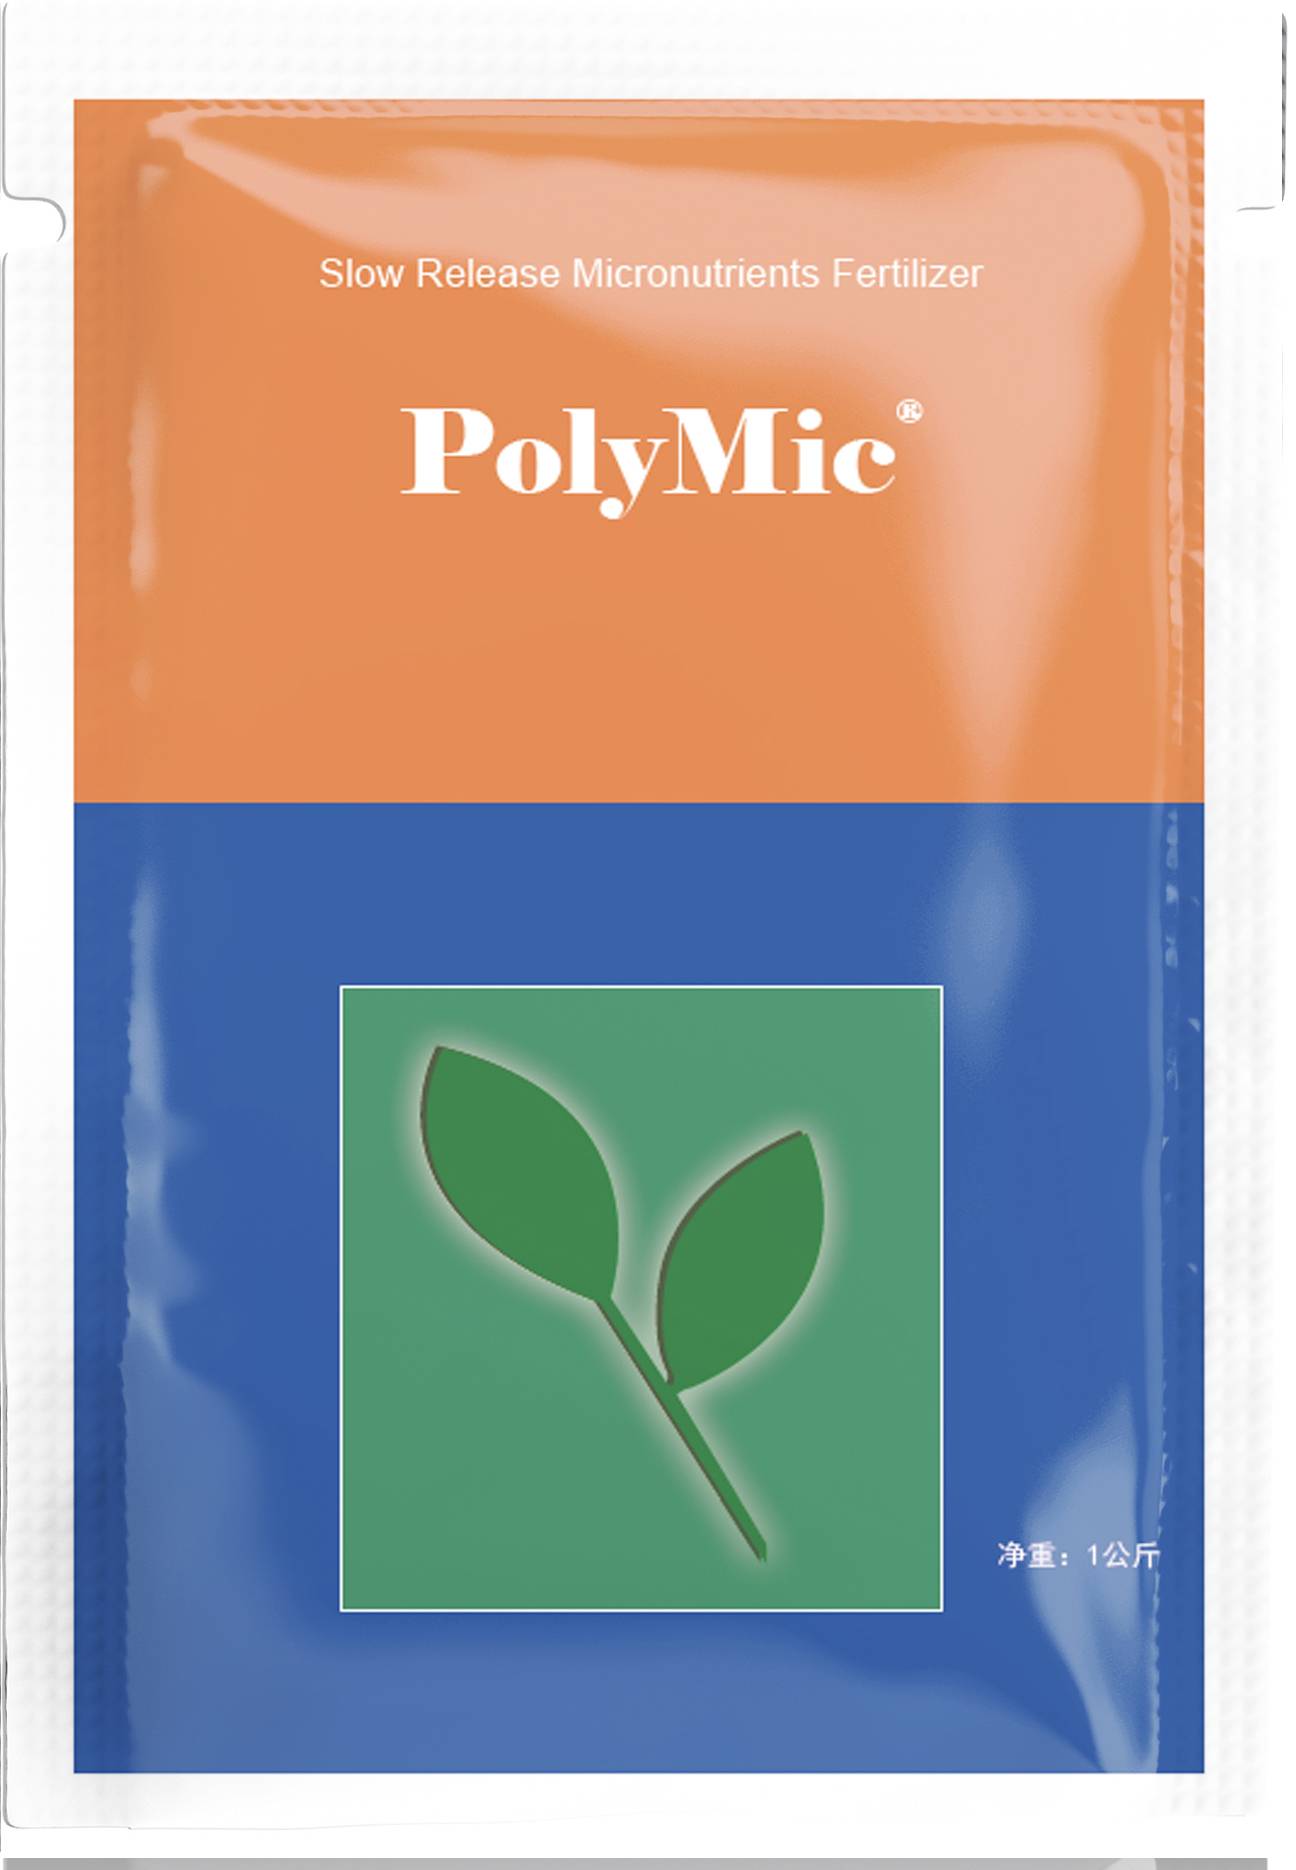 PolyMic 长效大颗粒缓释微肥